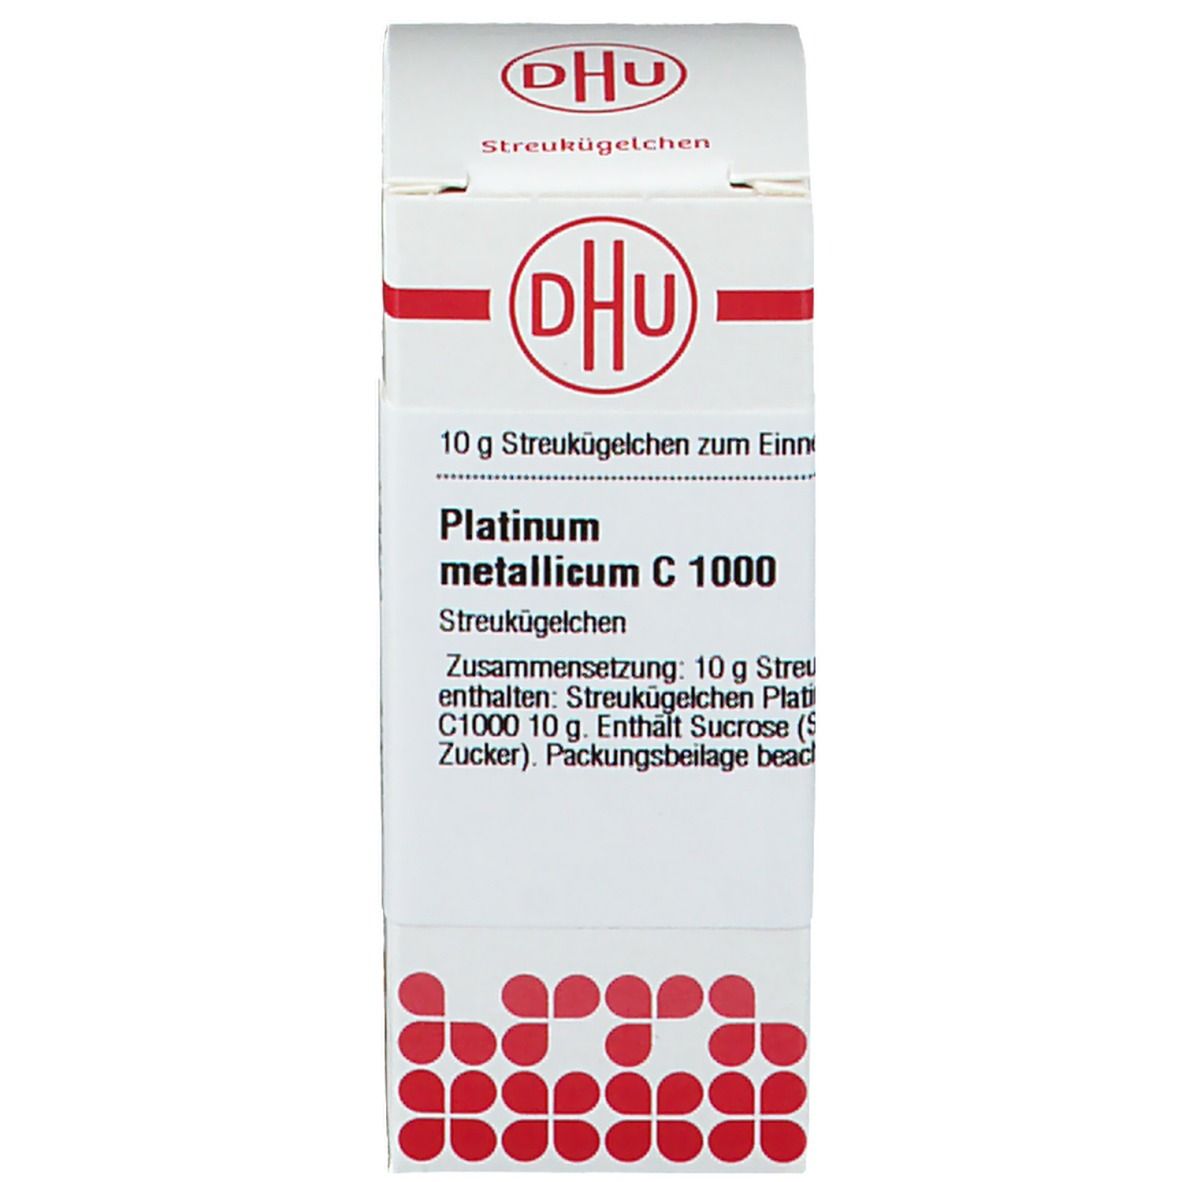 DHU Platinum Metallicum C1000